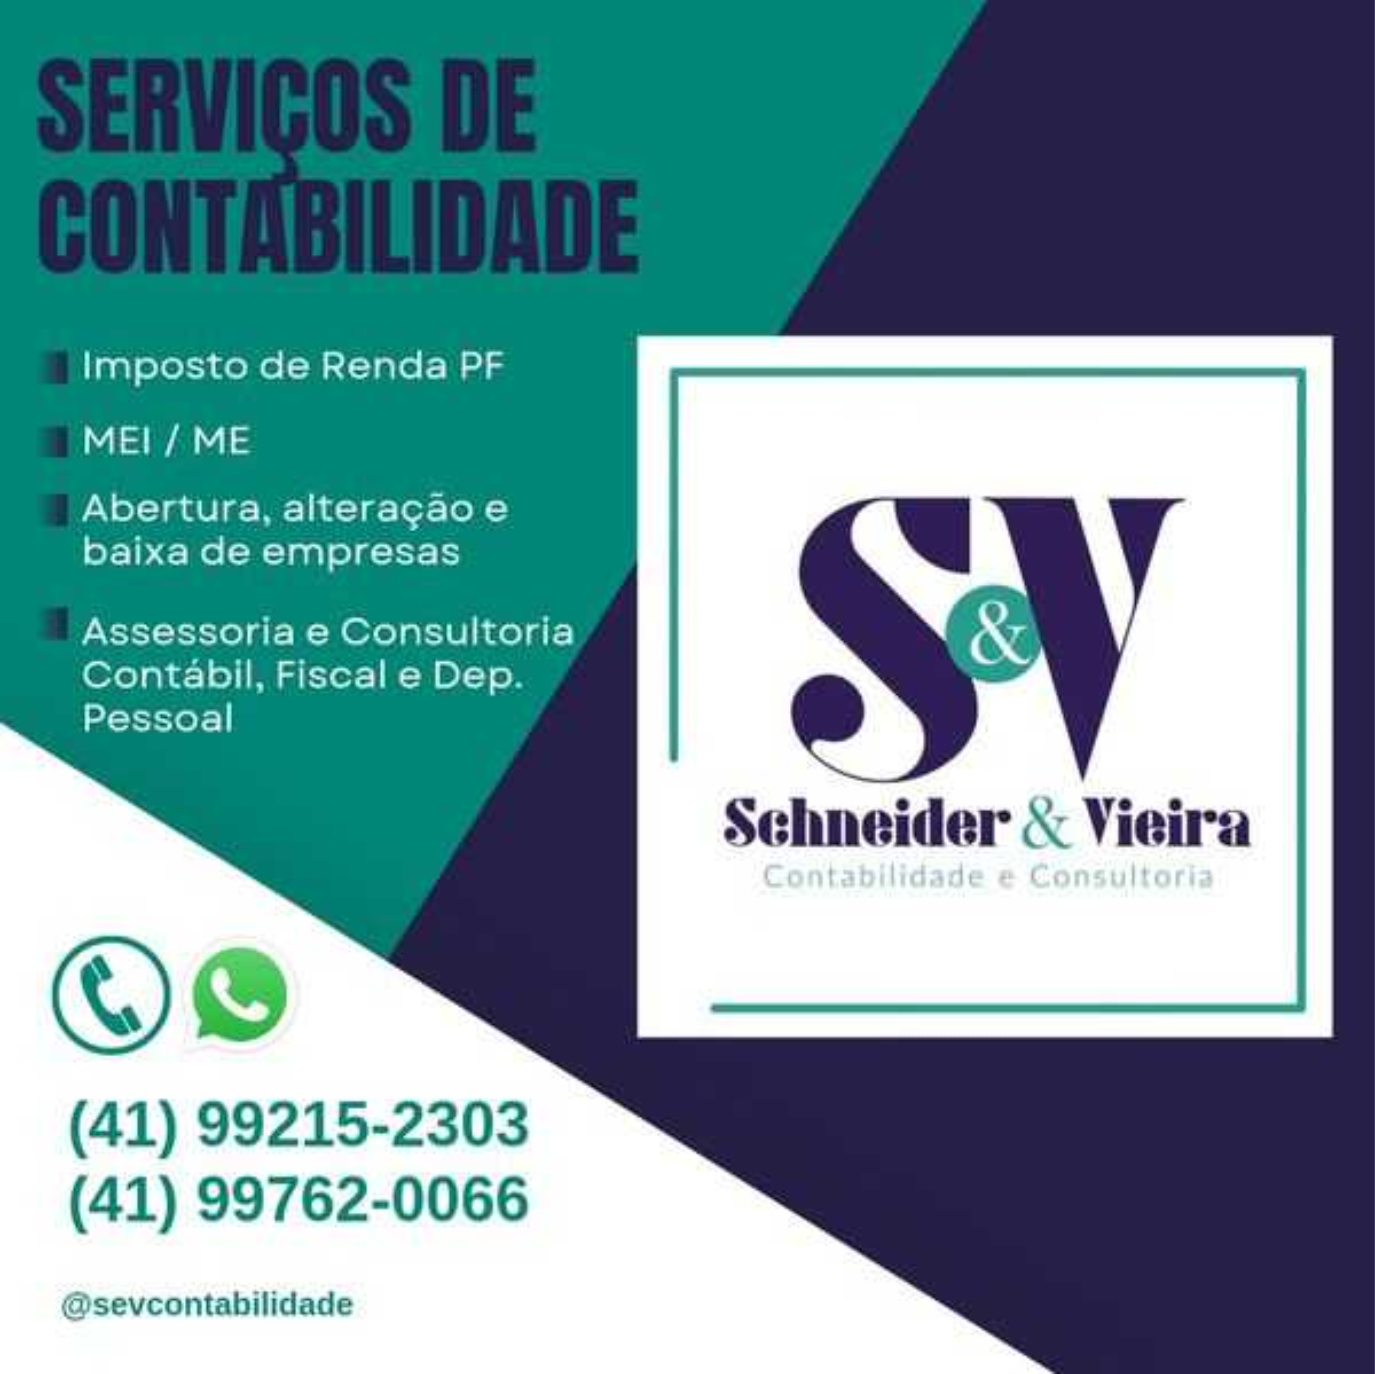 Schneider & Vieira Contabilidade e Consultoria      Fones: (41) 99215-2303 / (41) 99762-0066